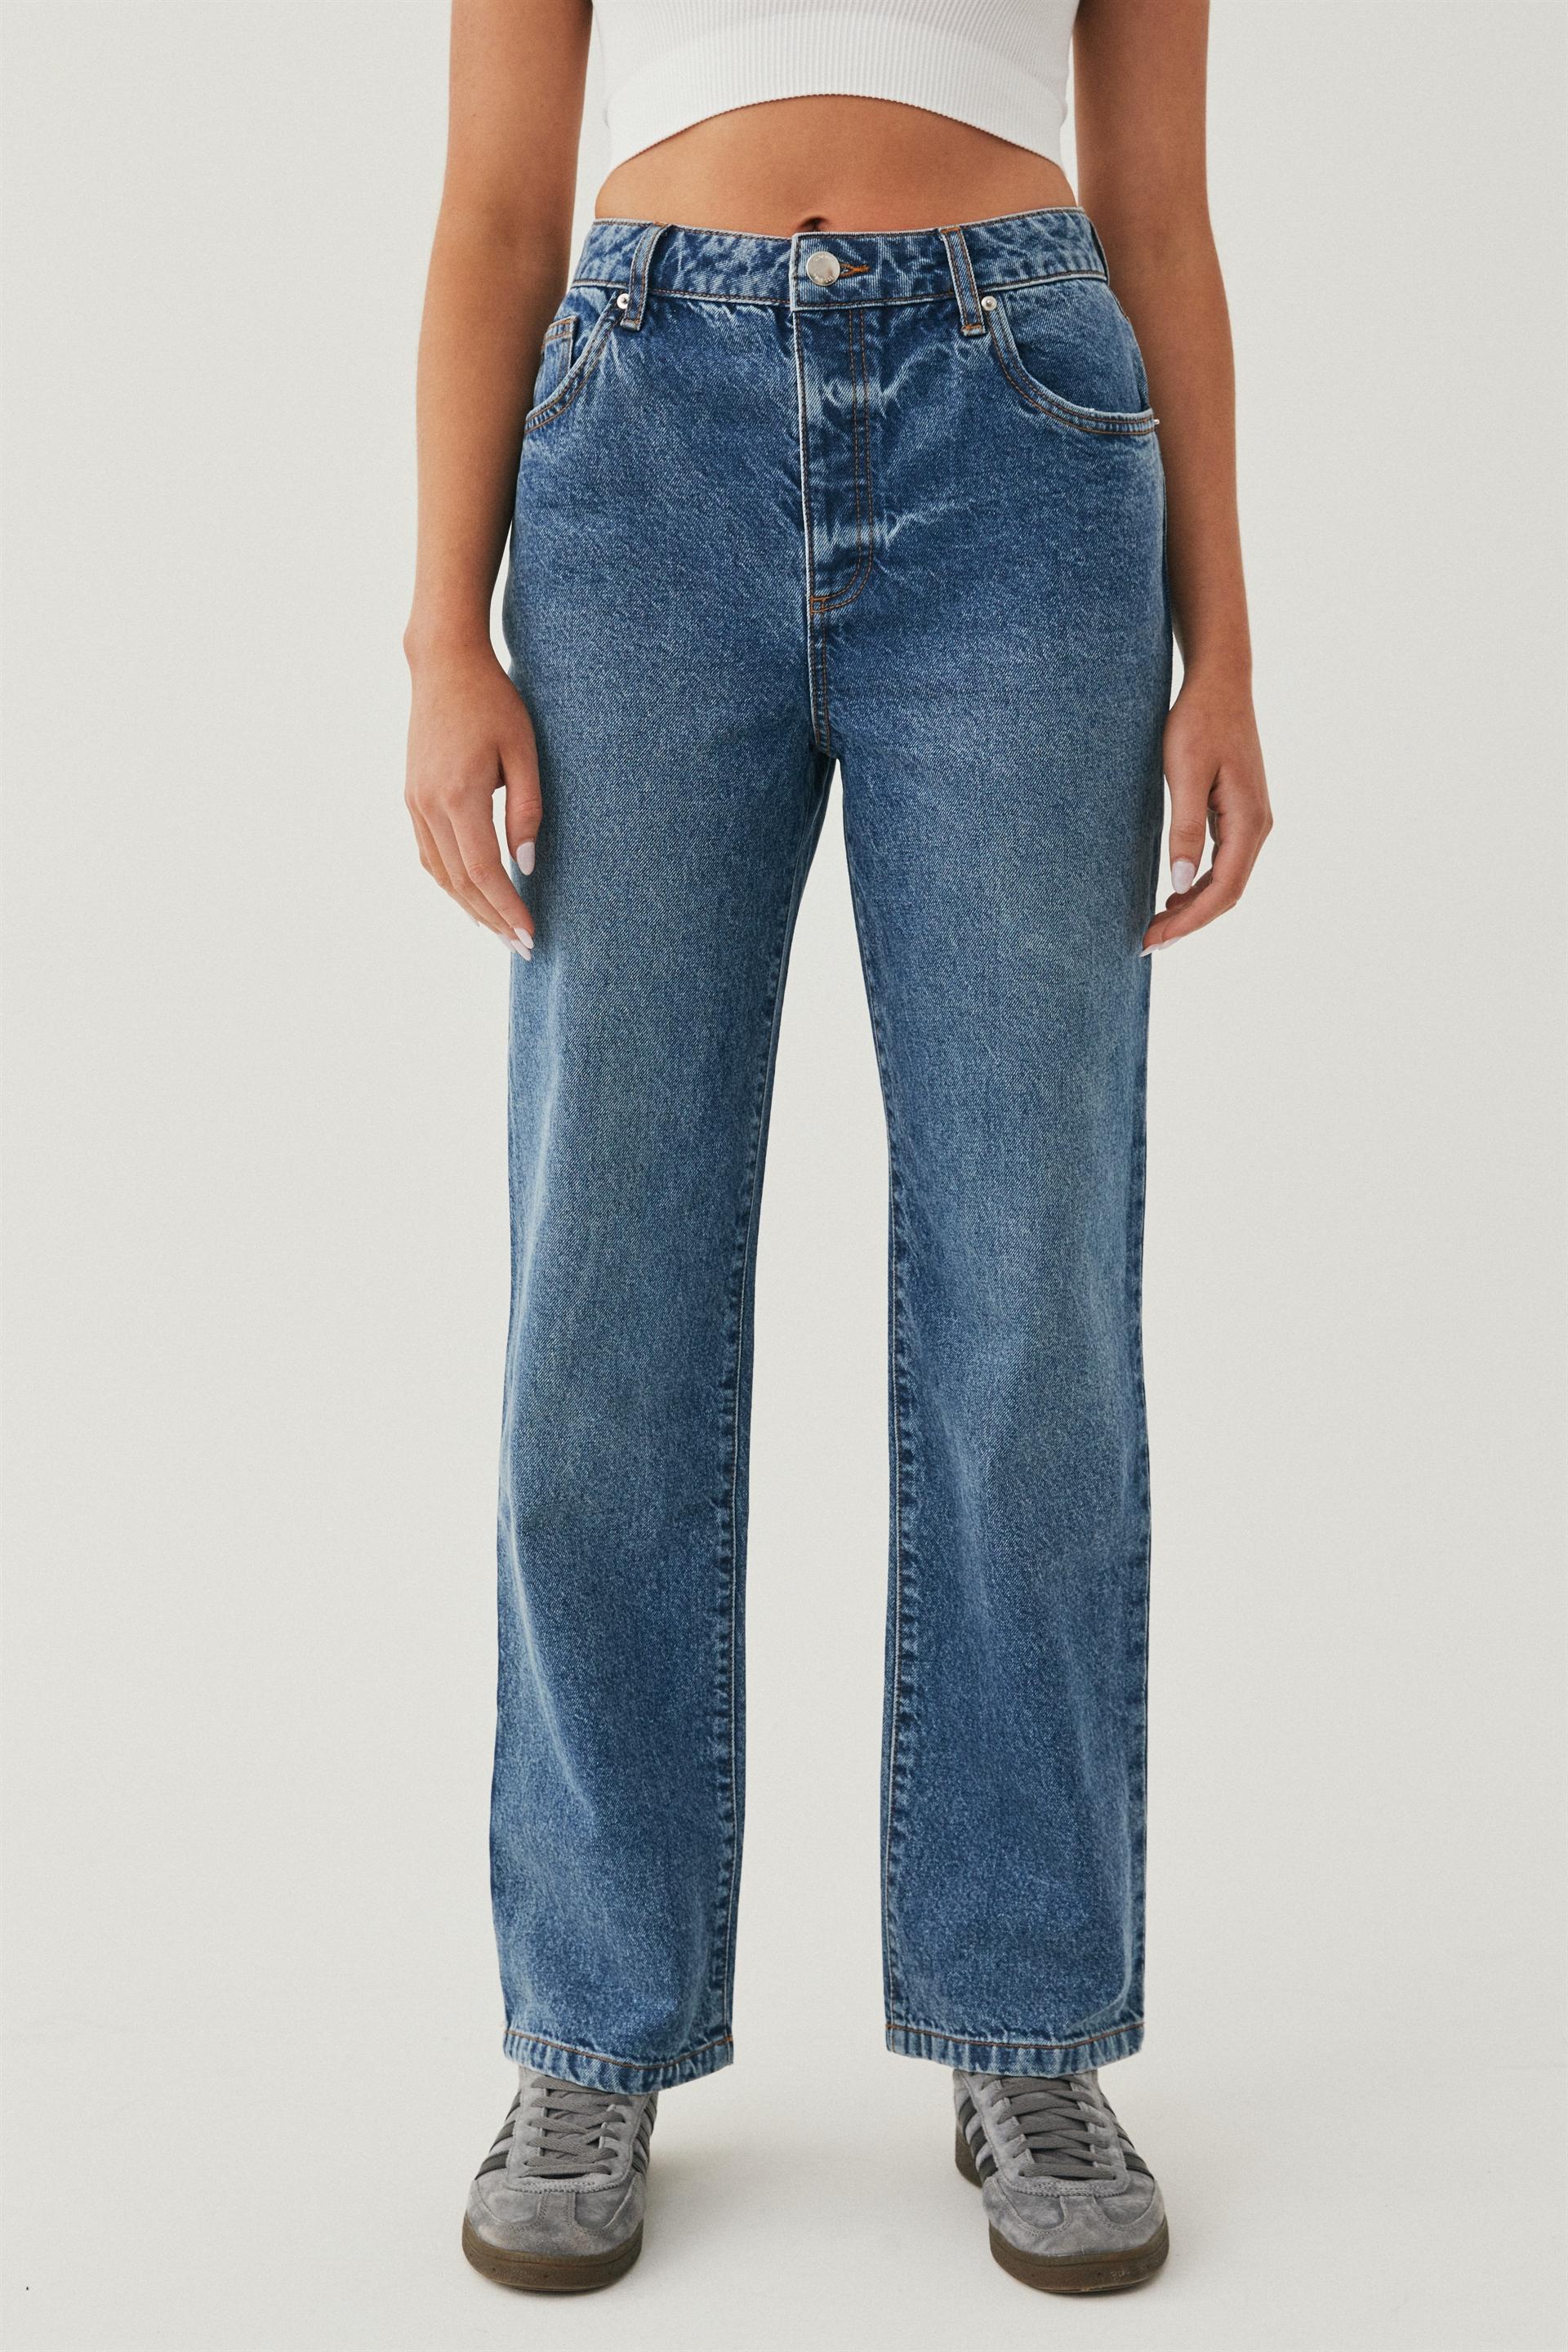 Straight leg jean - nashville blue Supré Jeans | Superbalist.com